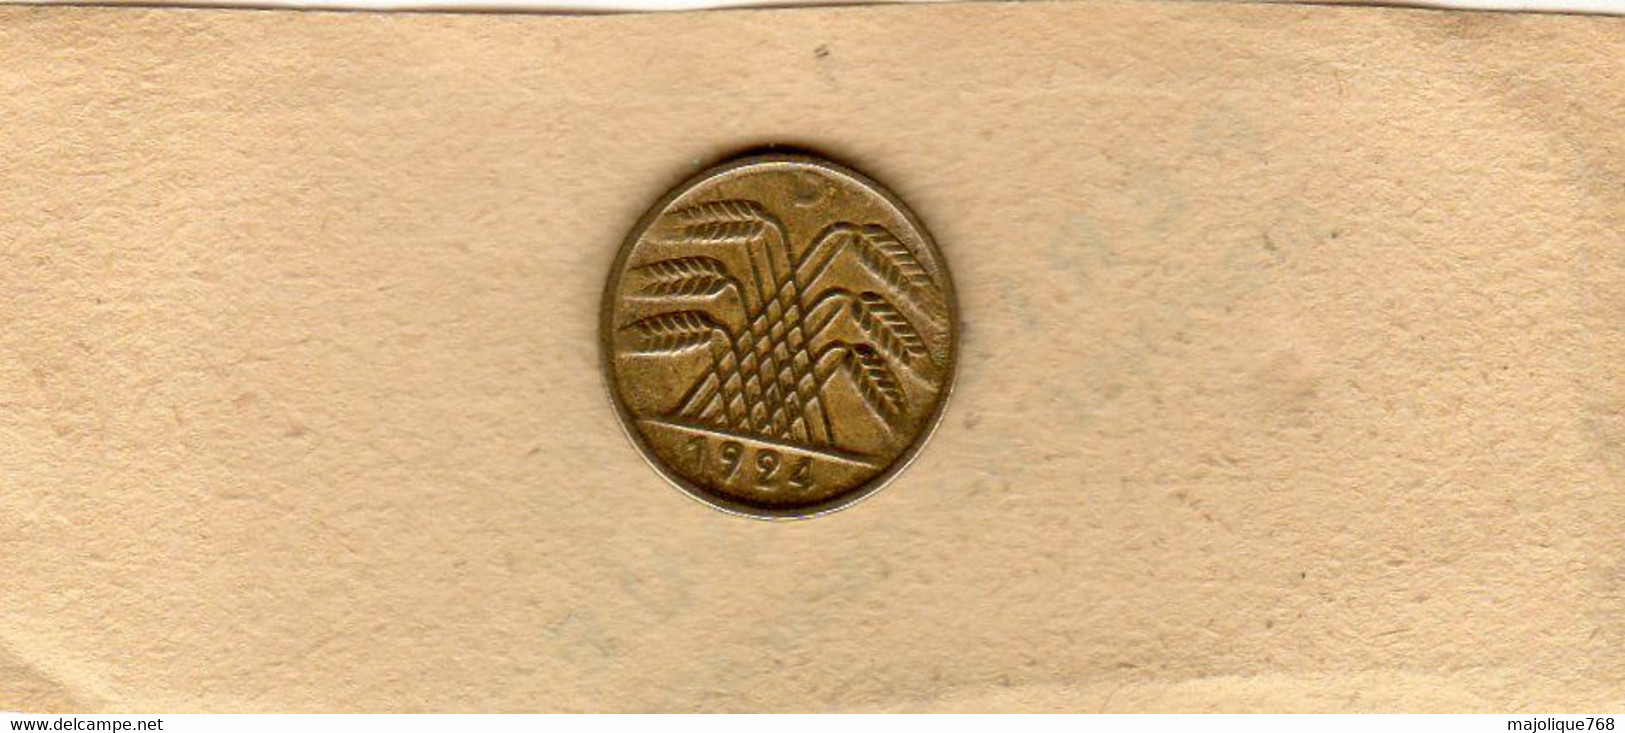 Monnaies D'Allemagne : Republique De Weimar 5 Reichspfennig 1924 Lettre D Munich Bronze-aluminium En TTB - - 5 Rentenpfennig & 5 Reichspfennig